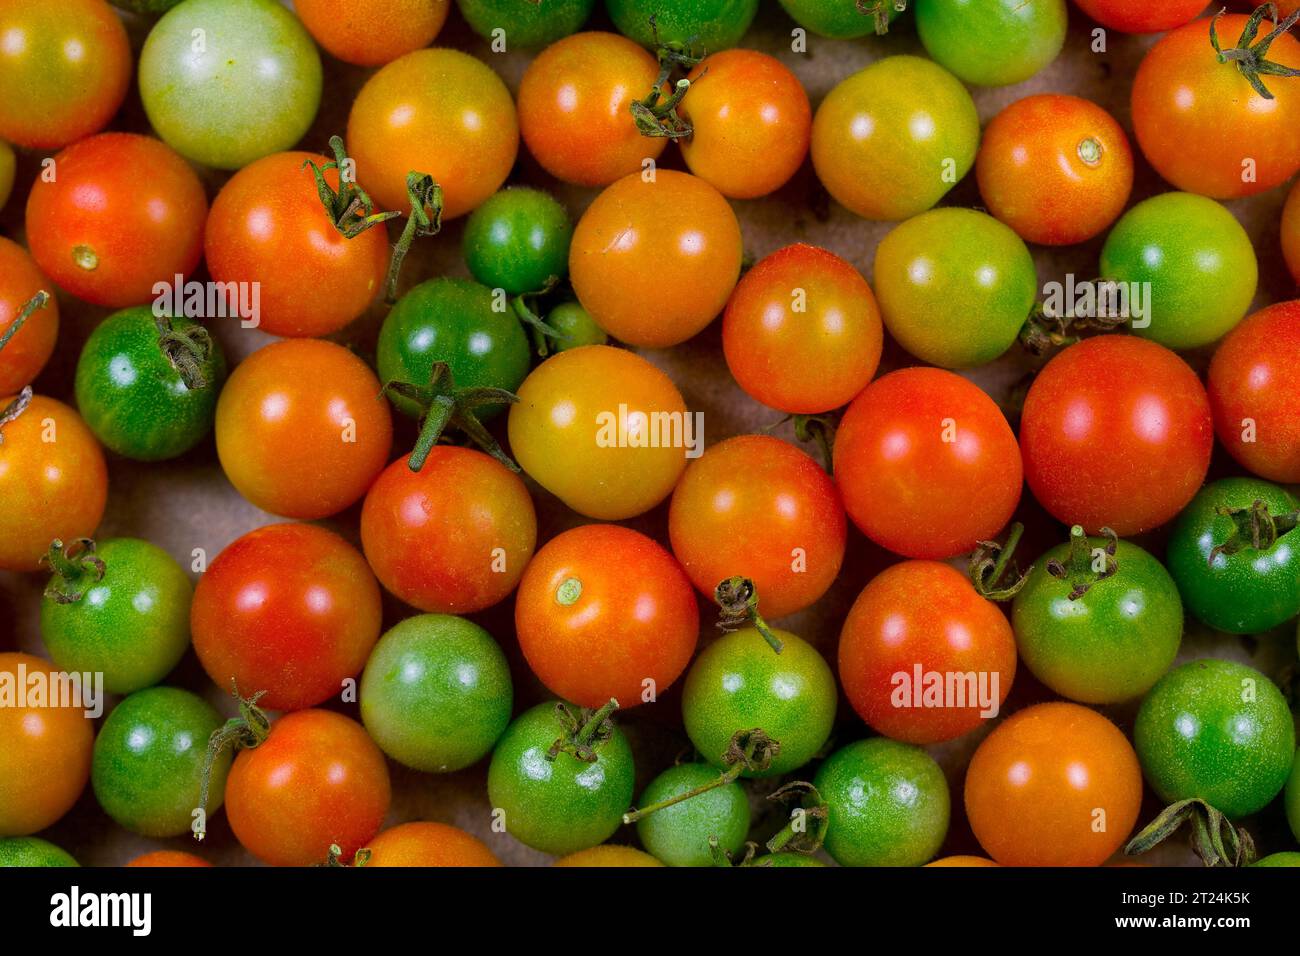 Pomodori ciliegini coltivati con metodo biologico in varie fasi di maturazione Foto Stock